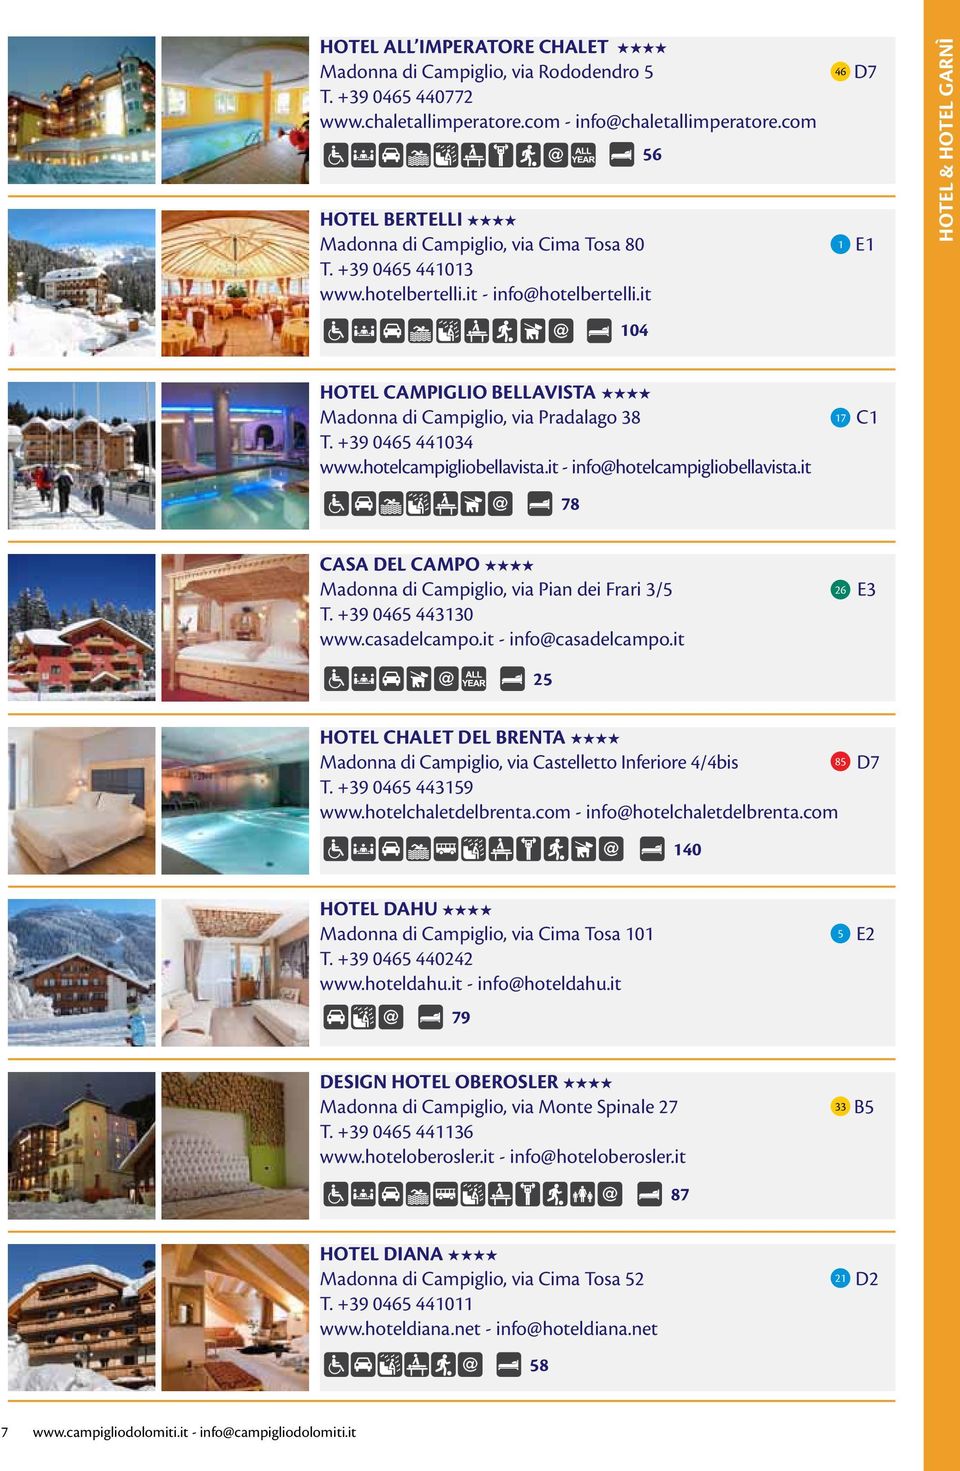 it 46 1 D7 E1 HOTEL & HOTEL GARNÌ 104 HOTEL CAMPIGLIO BELLAVISTA Madonna di Campiglio, via Pradalago 38 T. +39 0465 441034 www.hotelcampigliobellavista.it - info@hotelcampigliobellavista.